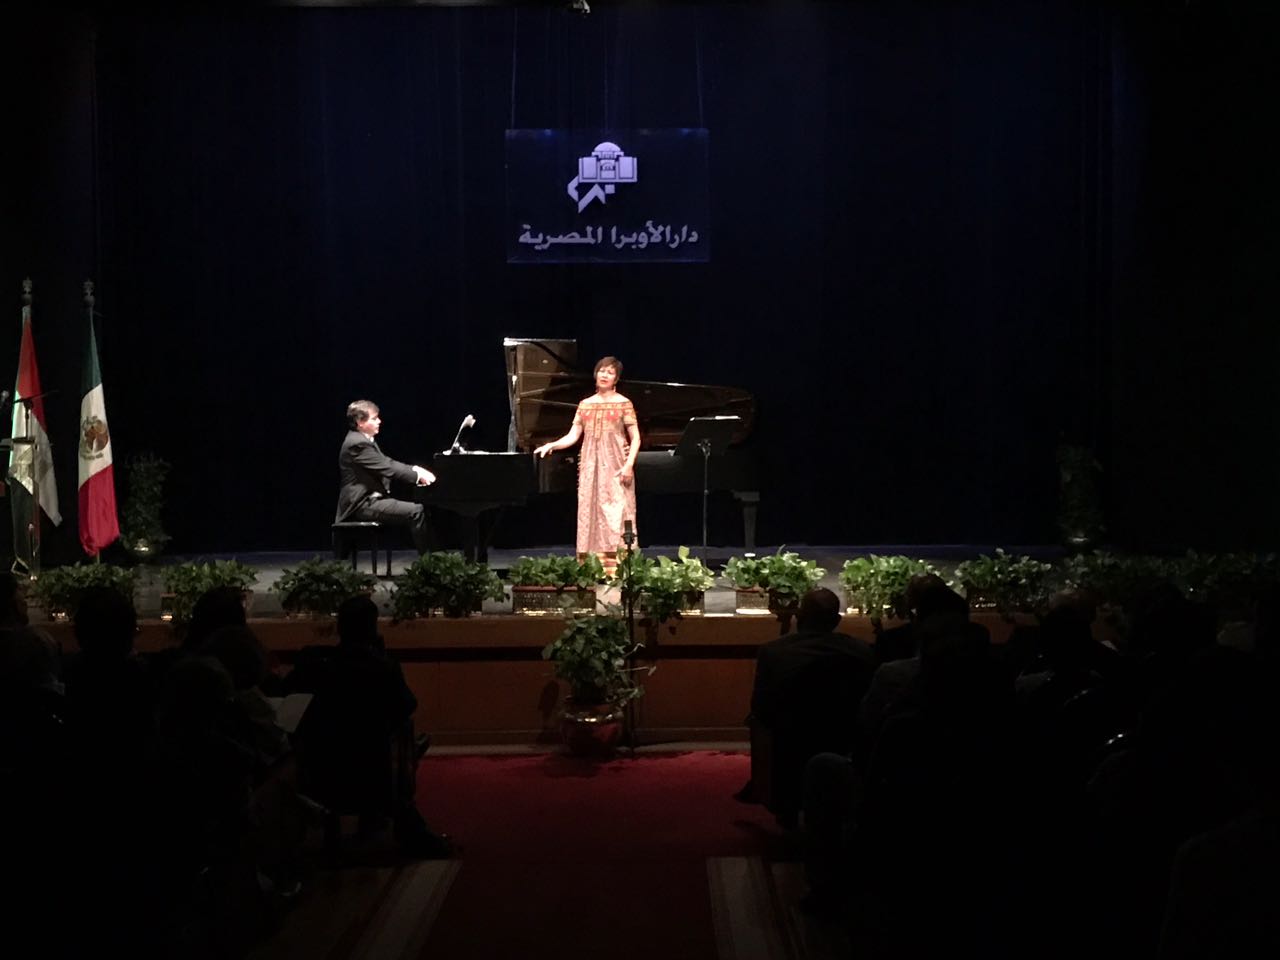 الجمهور المصرى يتفاعل مع المطربة العالمية السوبرانو زوليمار لوبيزاريوس و عازف البيانو الشهير سانتياجو بنييروا،